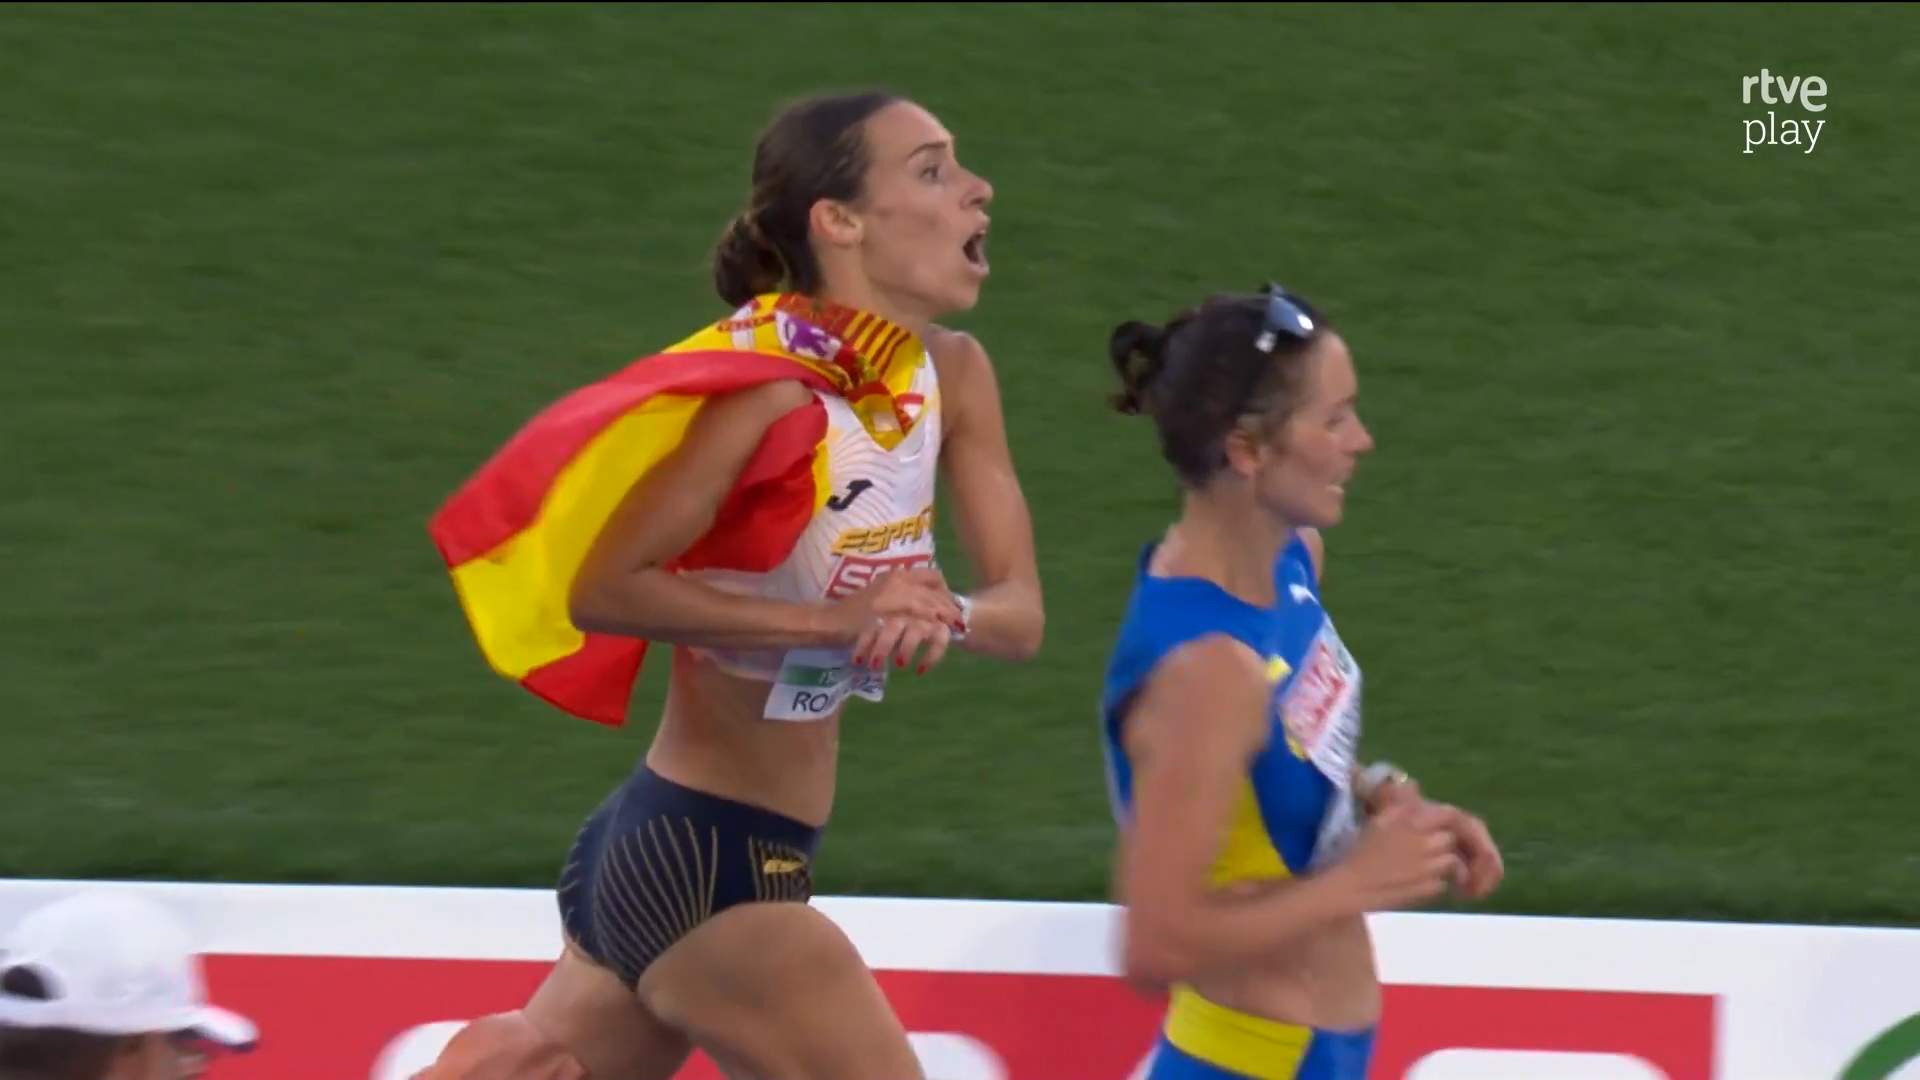 El video viral de la atleta española Laura García-Caro, que pierde el bronce en la línea de meta